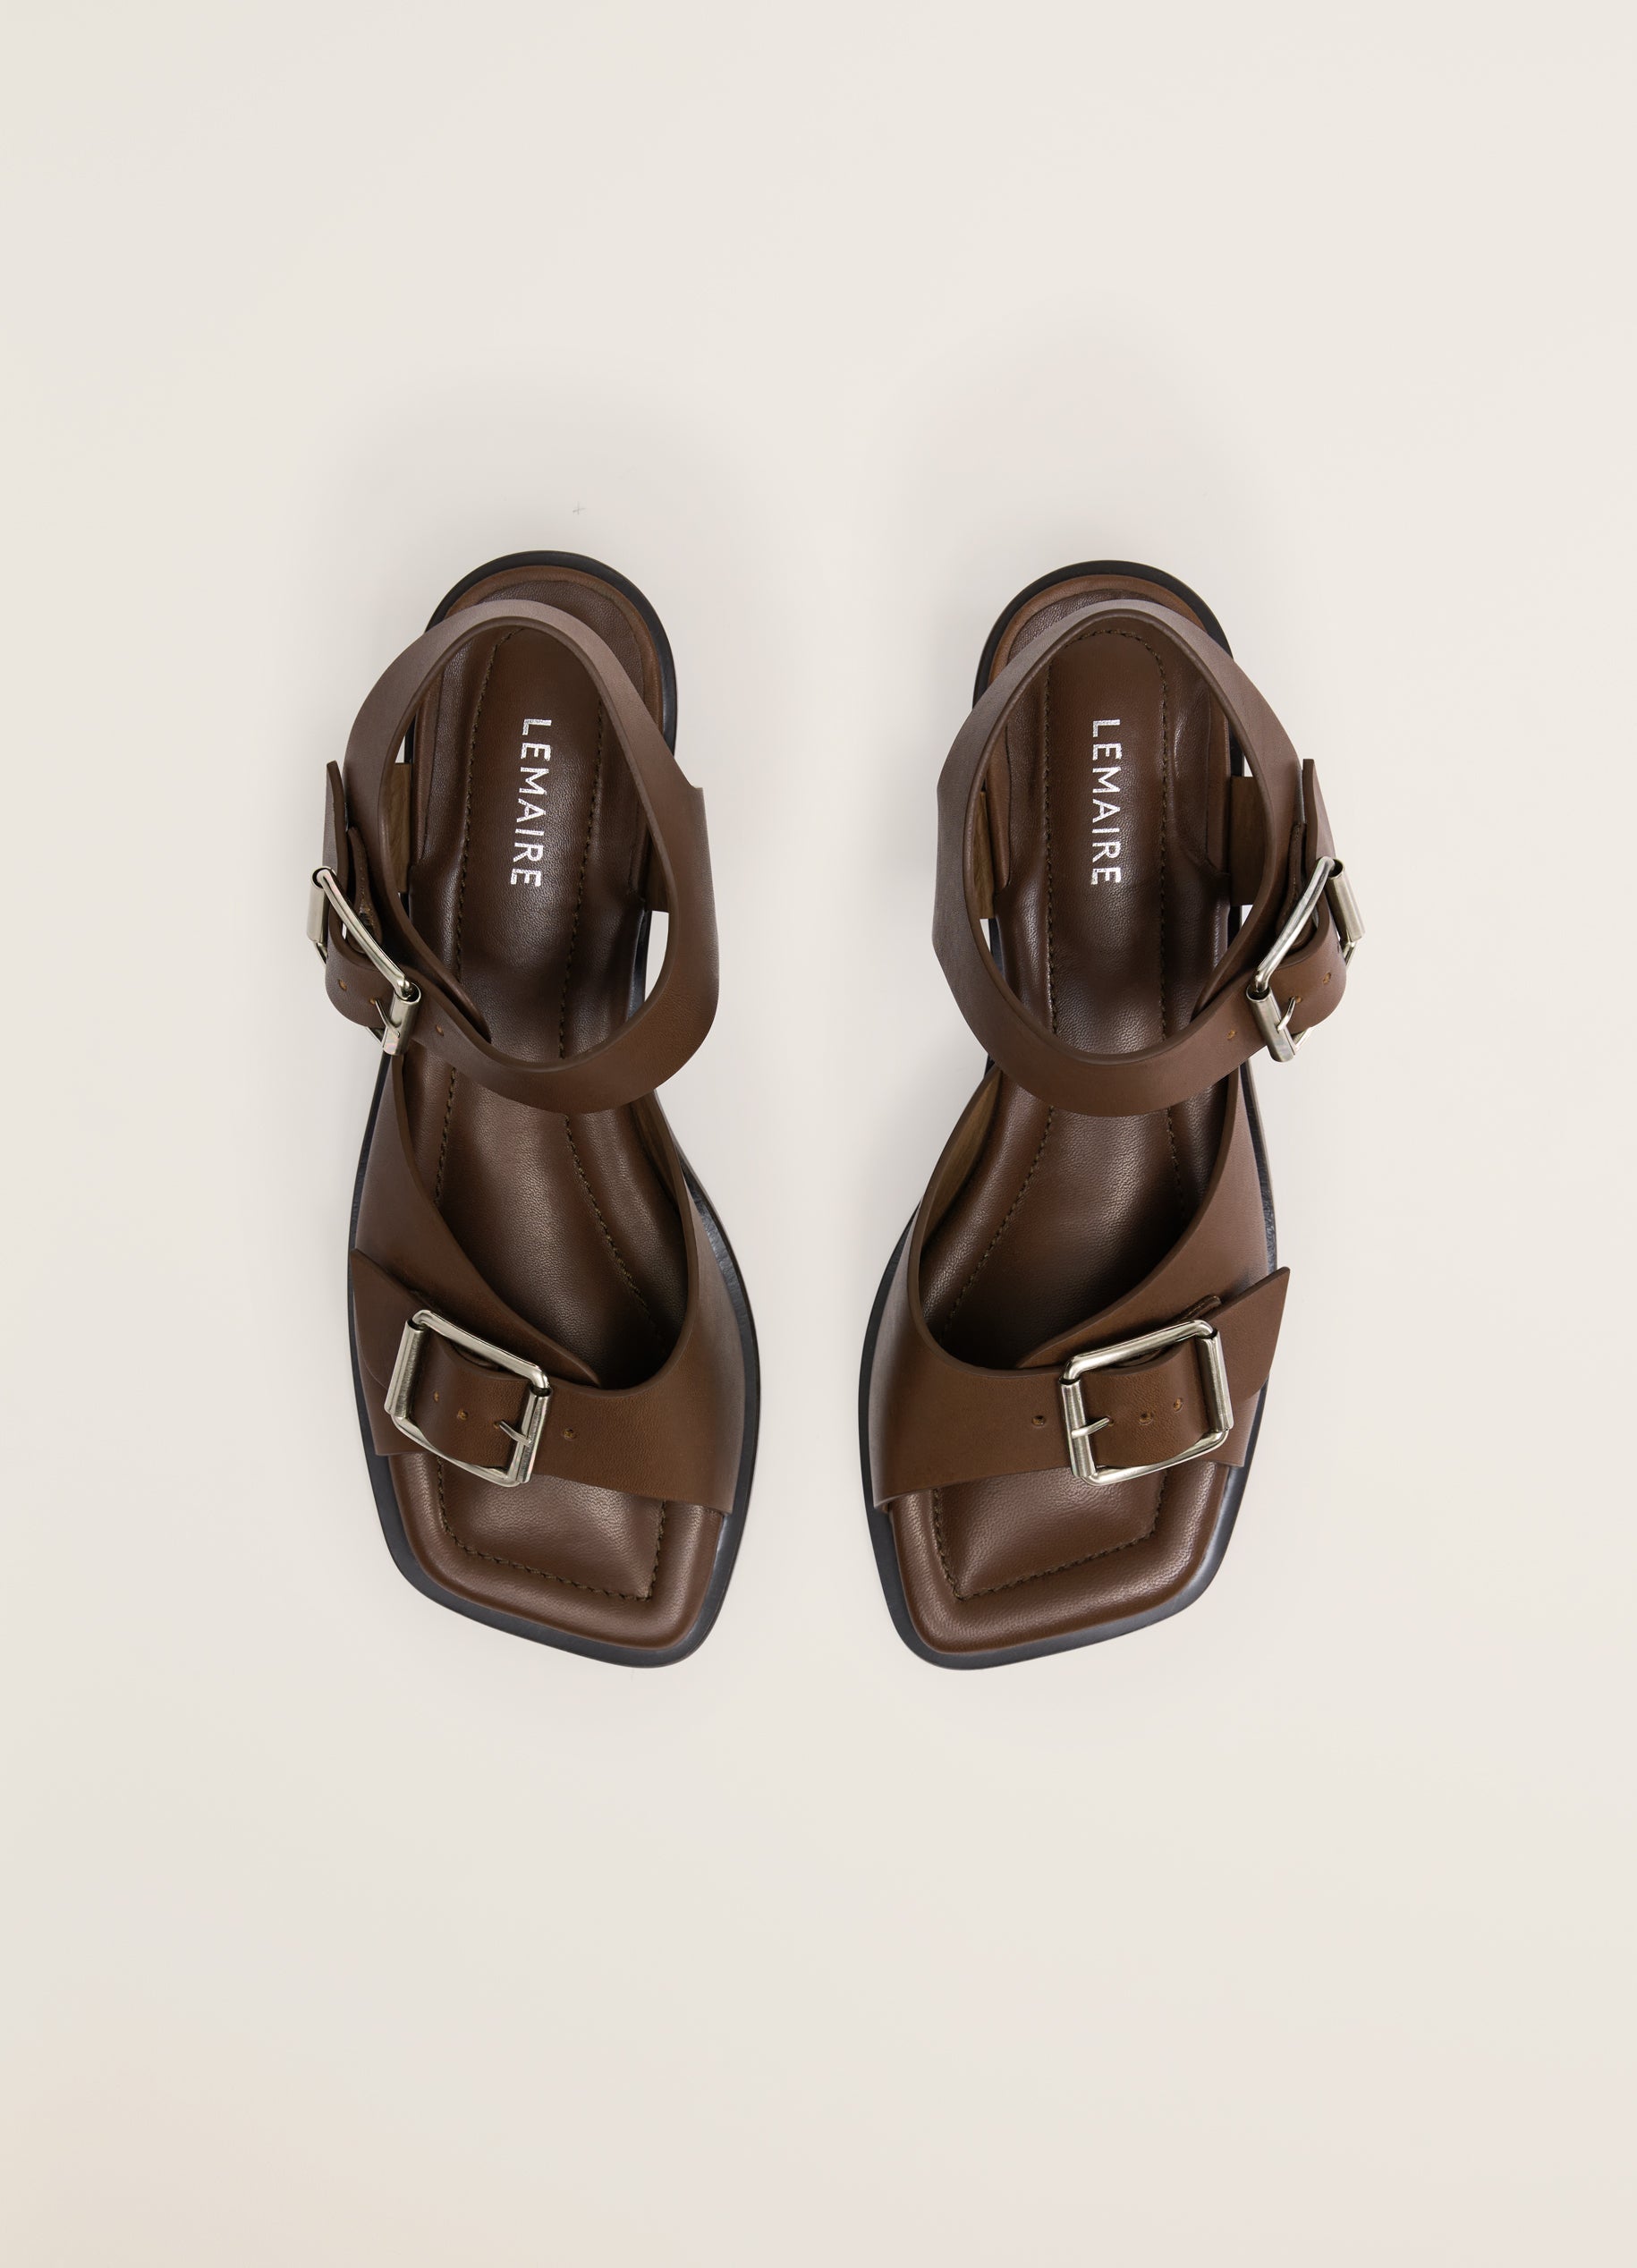 Get Upto 80% OFF on Sandals & Floaters For Men